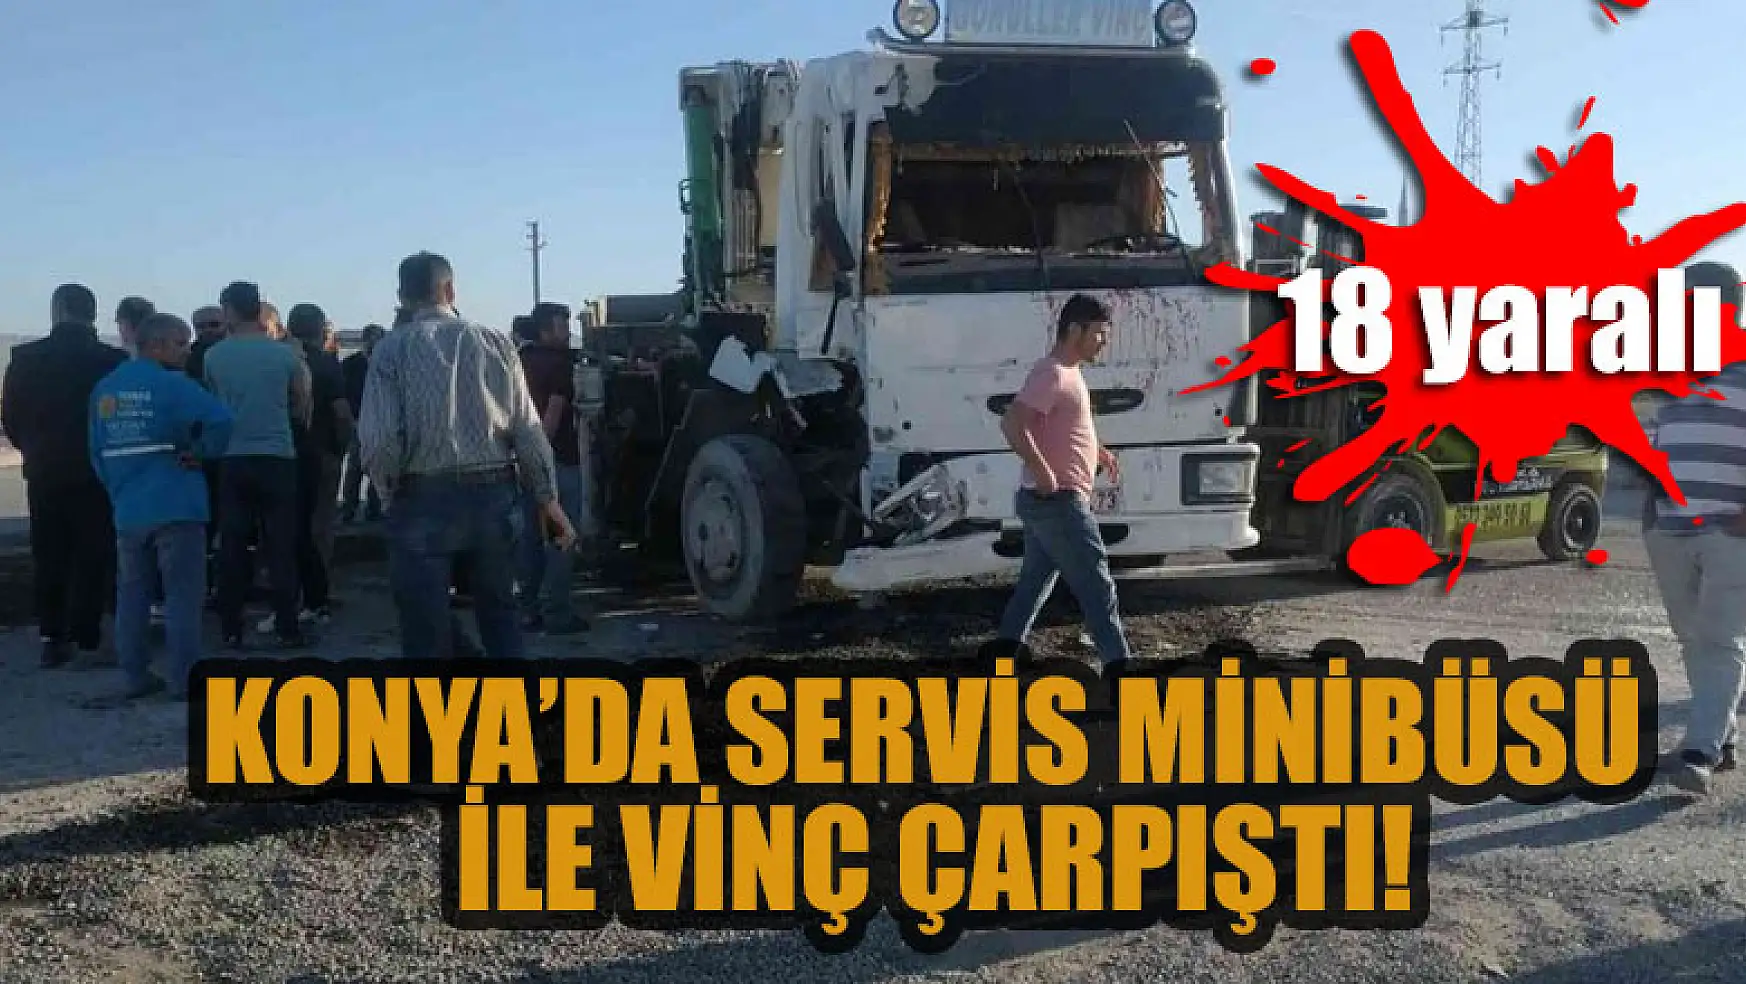 Konya'da servis minibüsü ile vinç çarpıştı: 18 yaralı